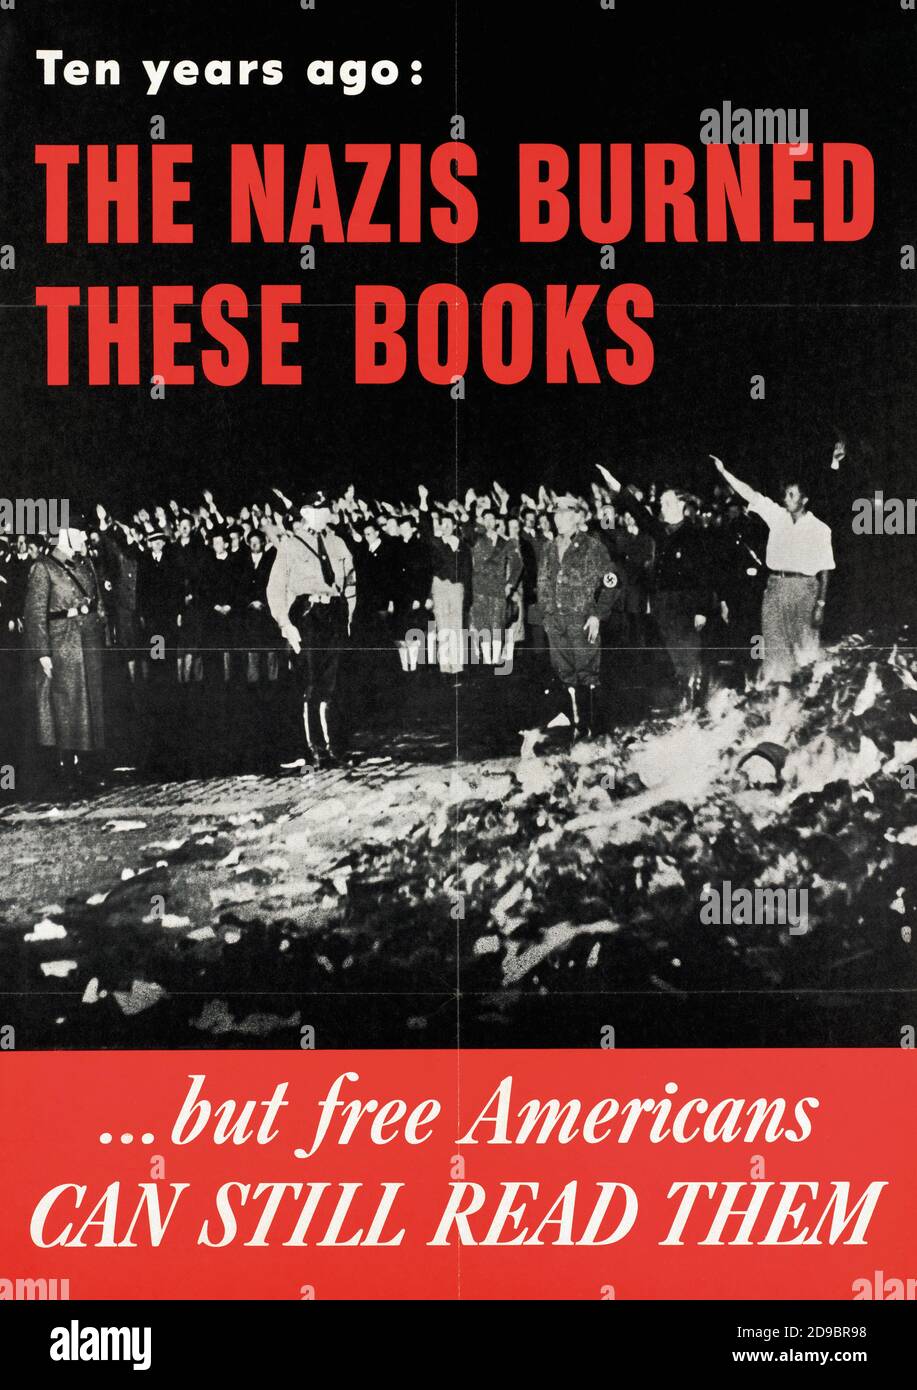 Dieci anni fa: I nazisti bruciarono questi libri…ma gli Americani liberi possono ancora leggere loro. Manifesto di propaganda anti-nazista della seconda guerra mondiale pubblicato nel 1943 dall'Ufficio delle informazioni sulla guerra degli Stati Uniti. Foto Stock